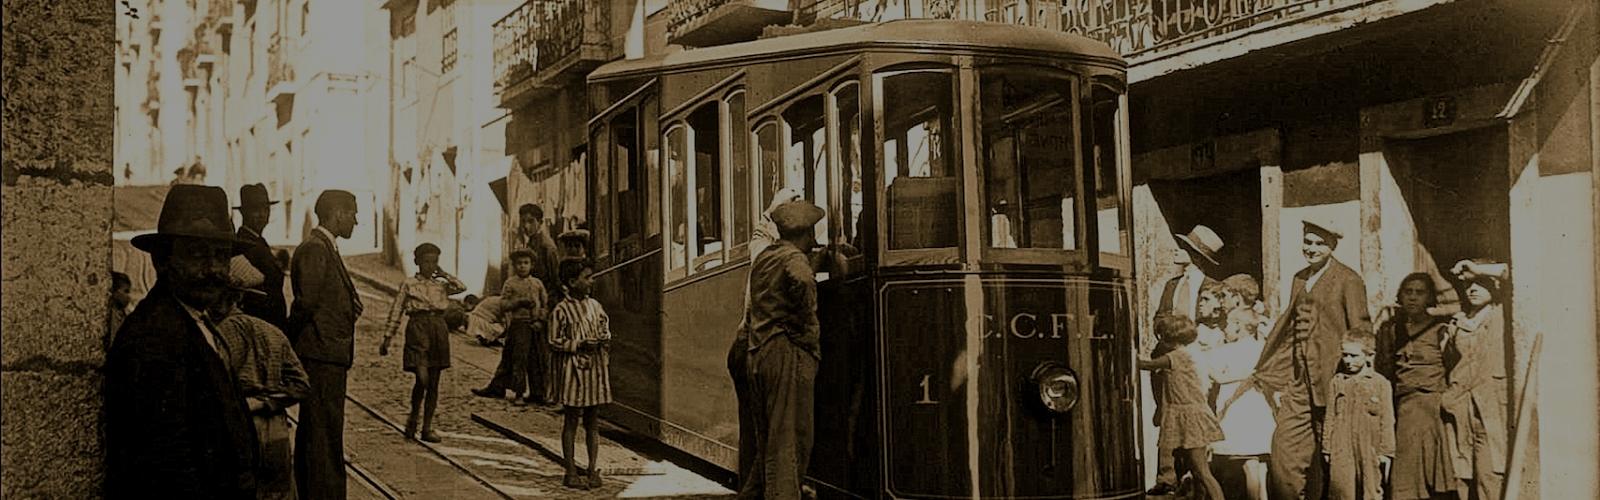 Лиссабон. История II. Лифты и трамваи